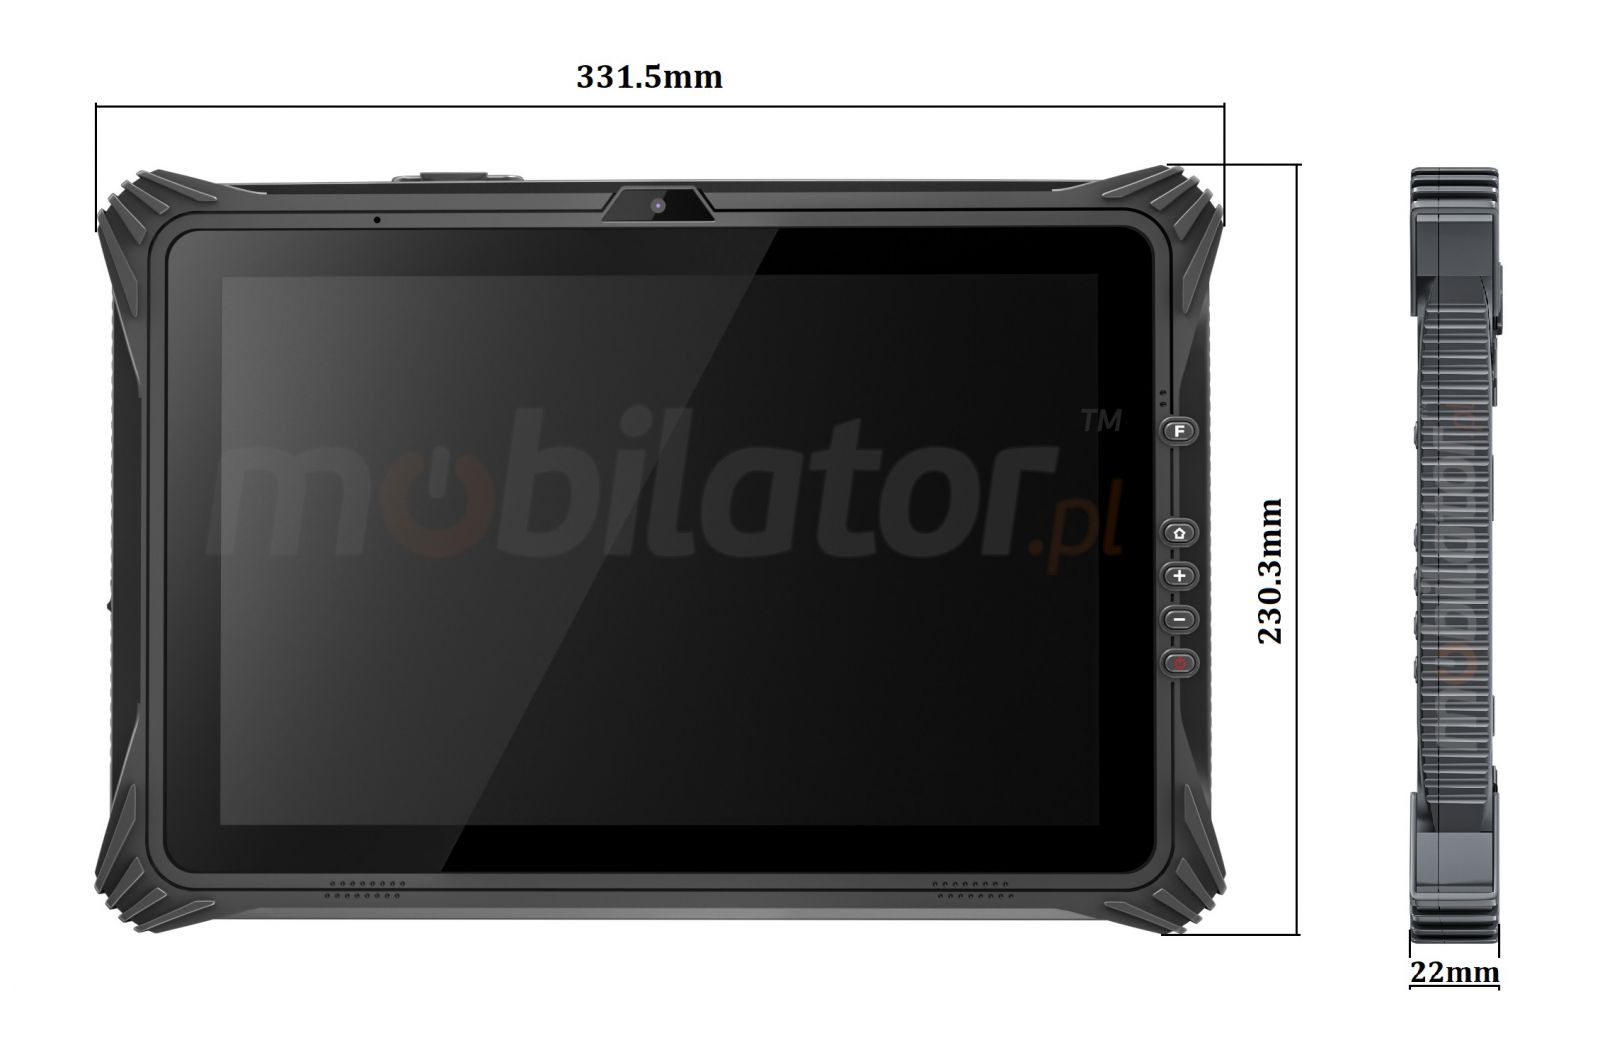 Emdoor I20U v.3 - Wodoodporny i wstrzsoodporny tablet z czytnikiem kodw 1D MOTO SE655, NFC oraz 4G, 8GB RAM i 128GB ROM